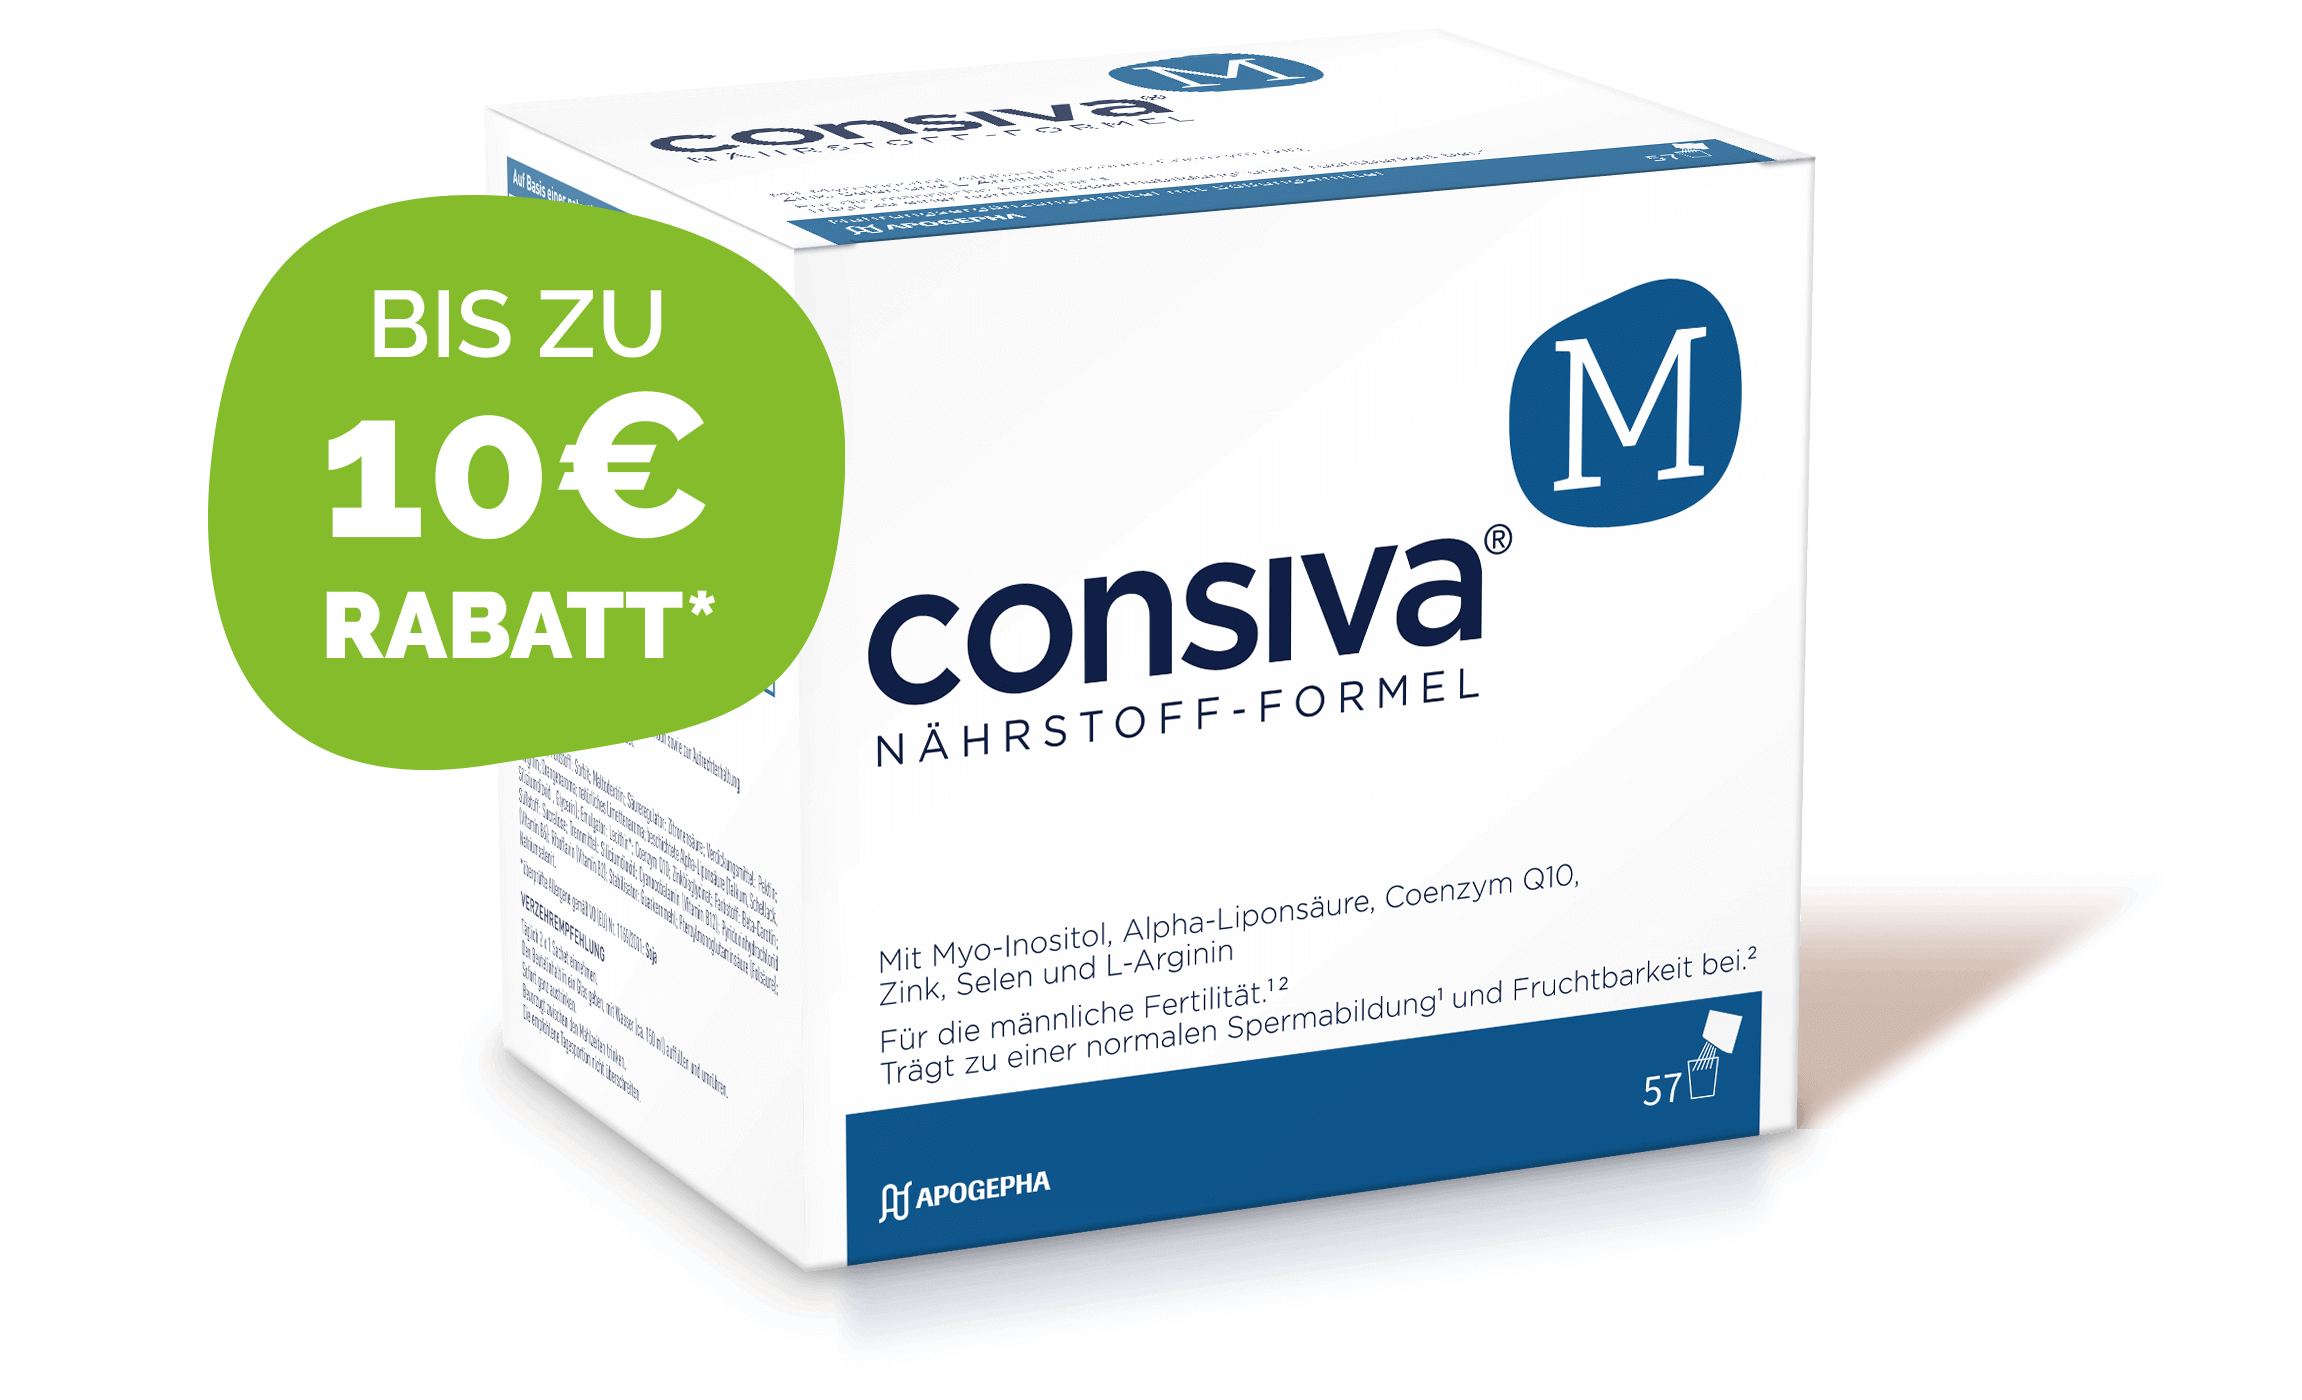 consiva® M Nährstoff-Formel